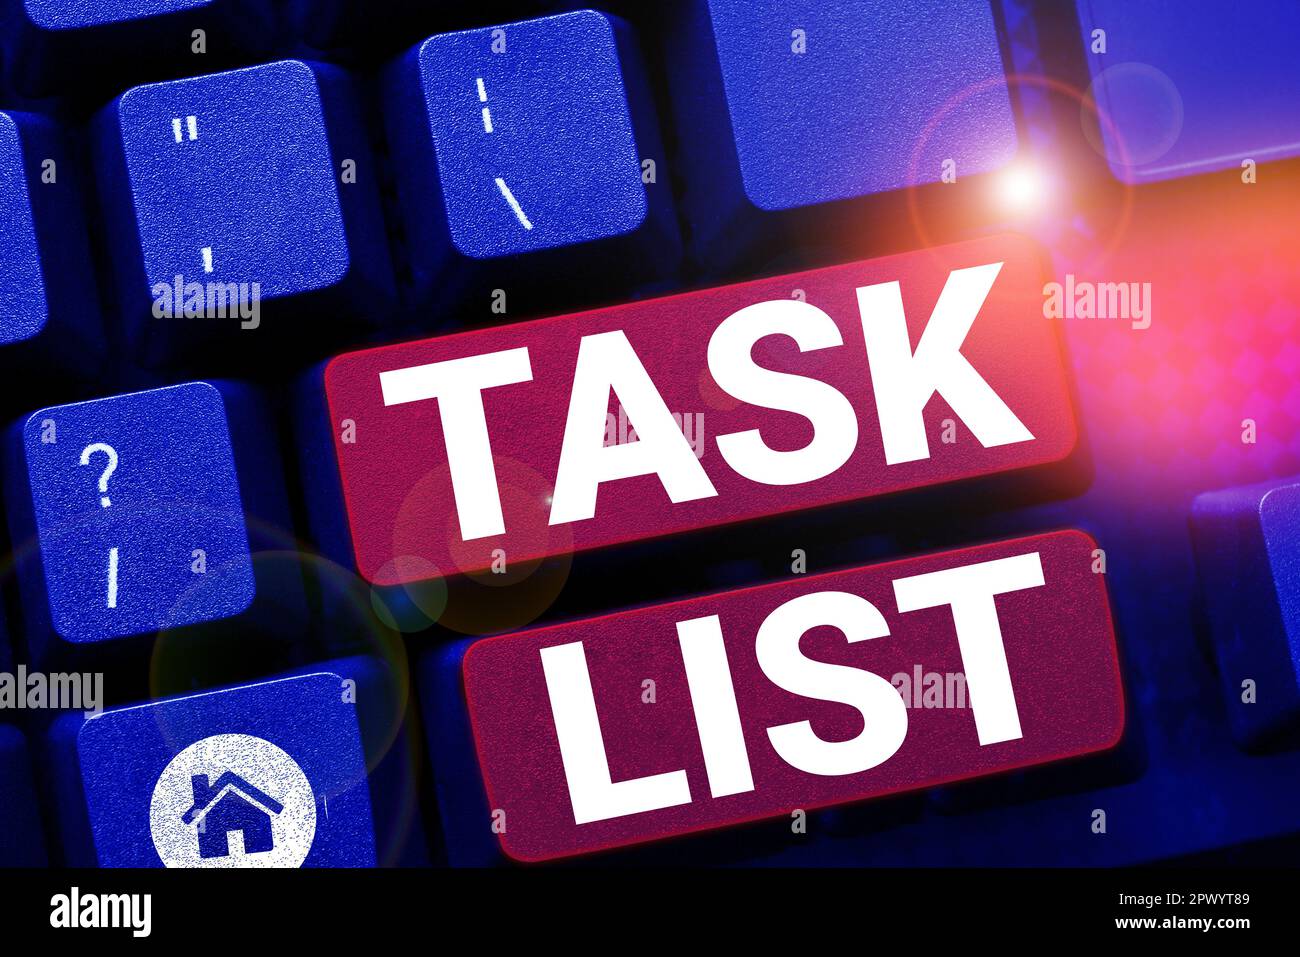 Affiche textuelle montrant la liste des tâches, le groupe de rappel de planification de la vitrine commerciale des activités à effectuer Banque D'Images